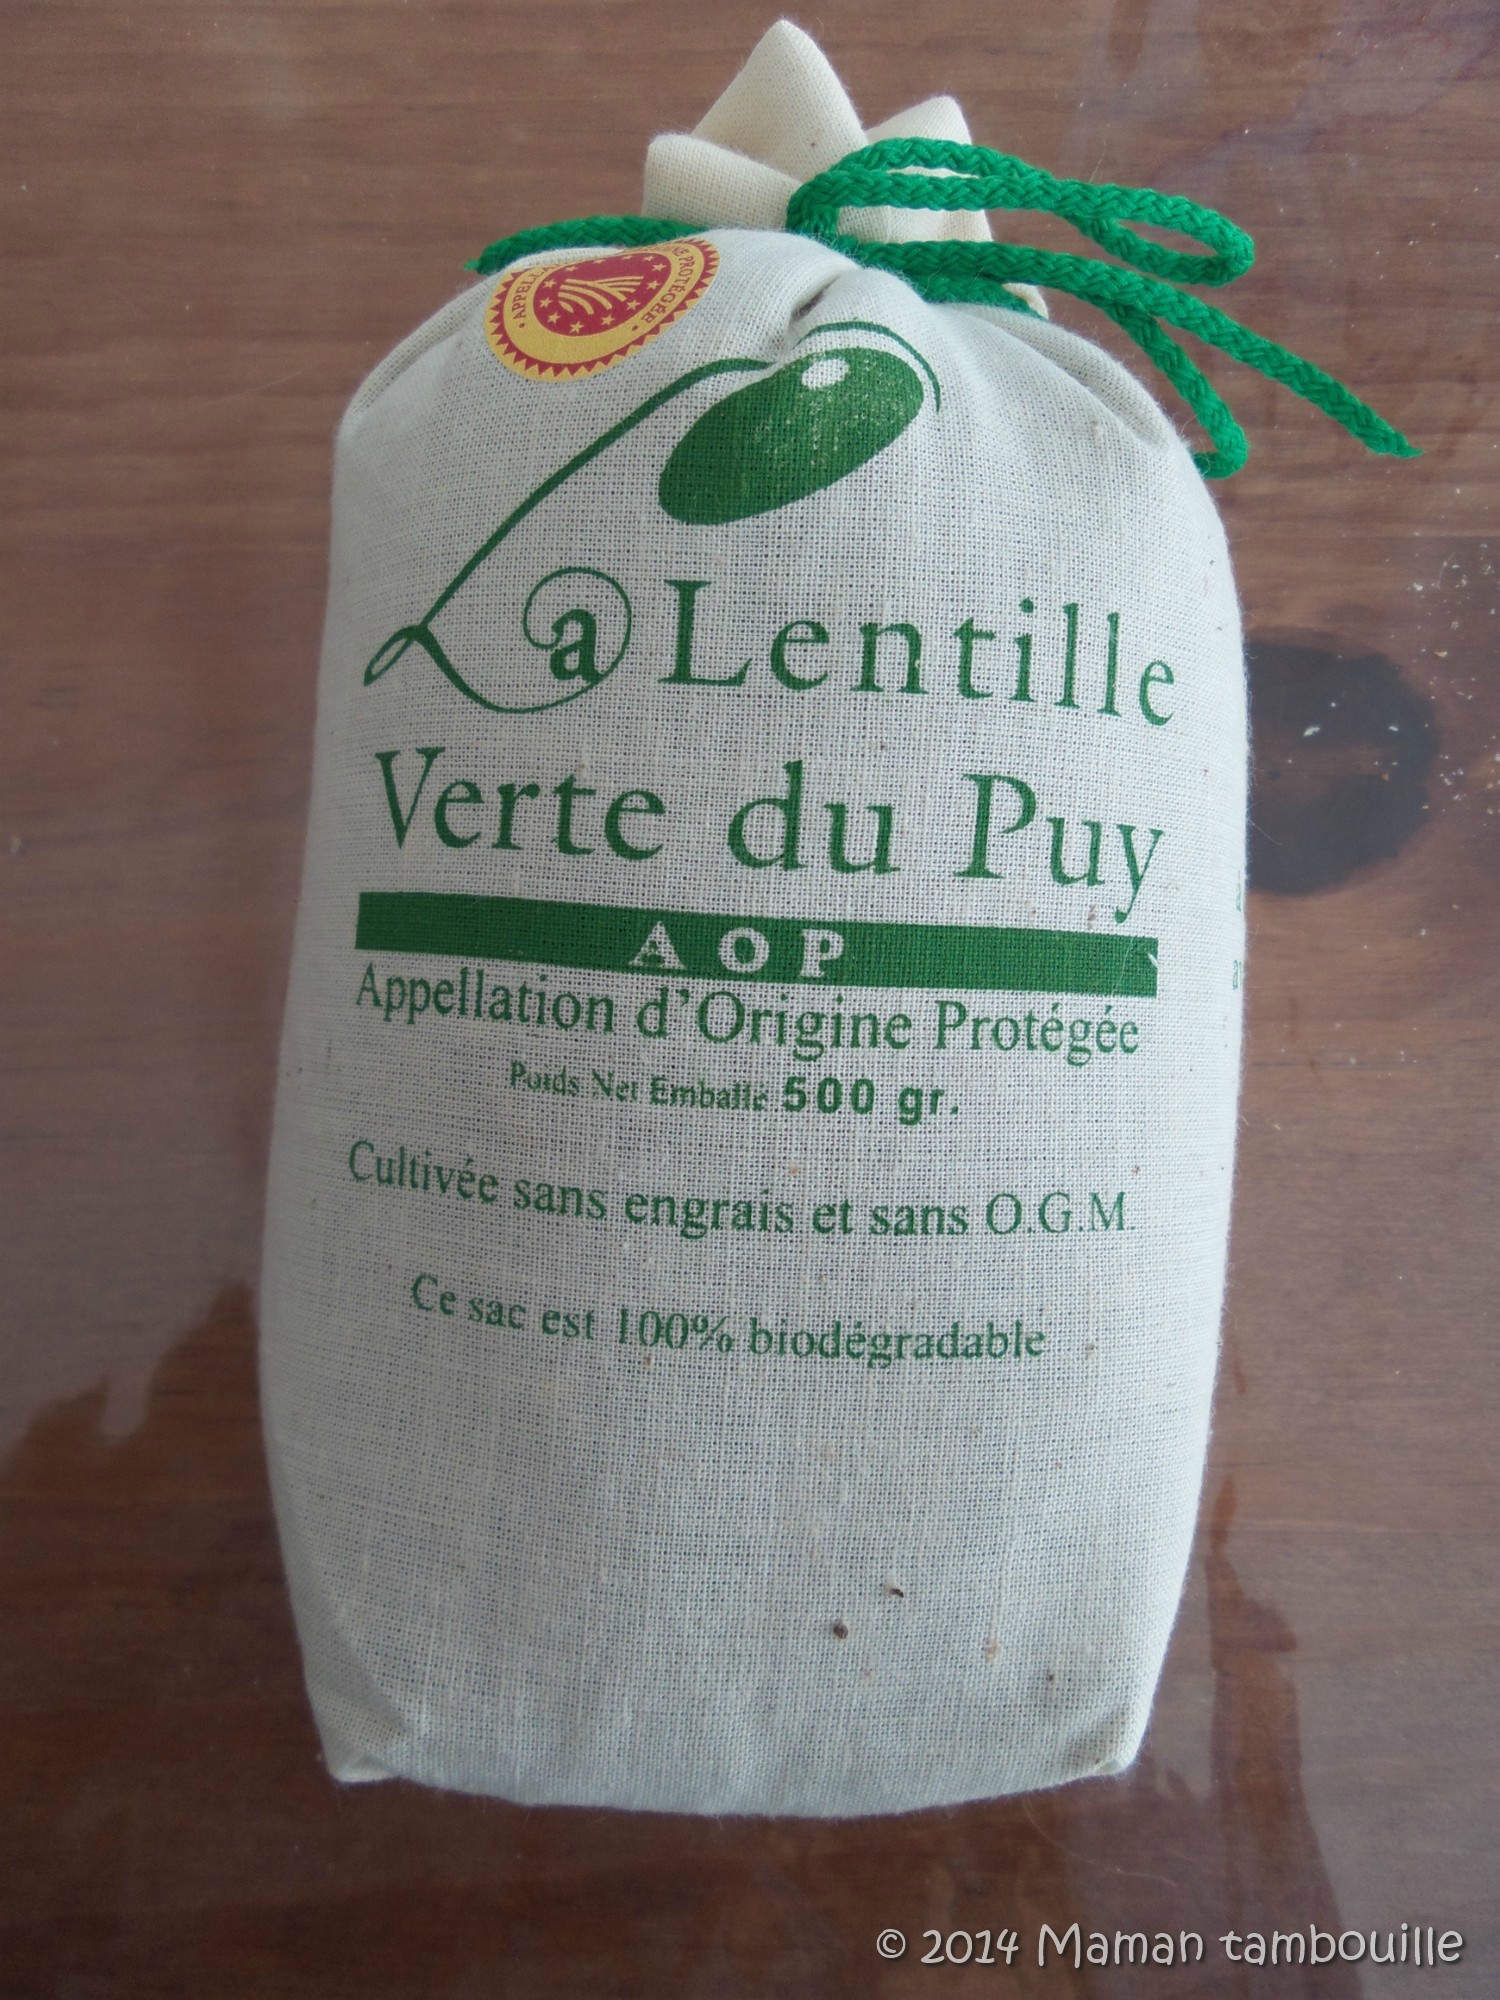 You are currently viewing Nouveau partenaire La lentille verte du Puy